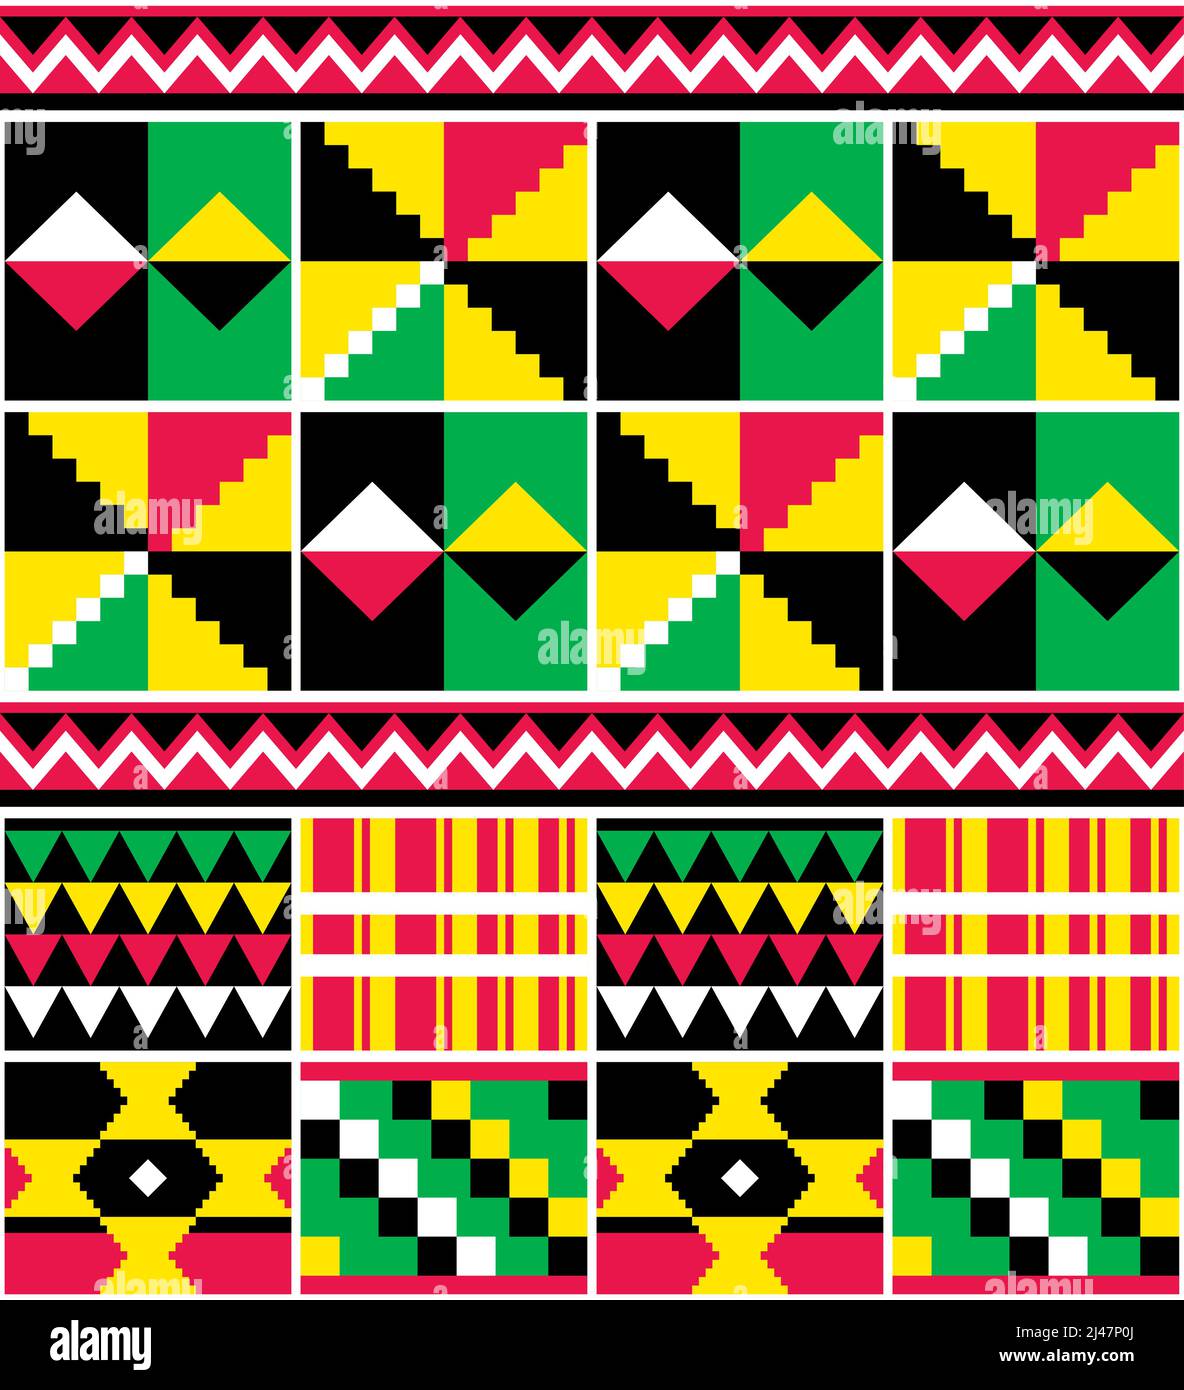 Kente nwentoma geometrisches Vektor-nahtloses Muster in Grün, Rot und Gelb, inspiriert von afrikanischen Stammesstoffen oder Textilien aus Ghana Stock Vektor